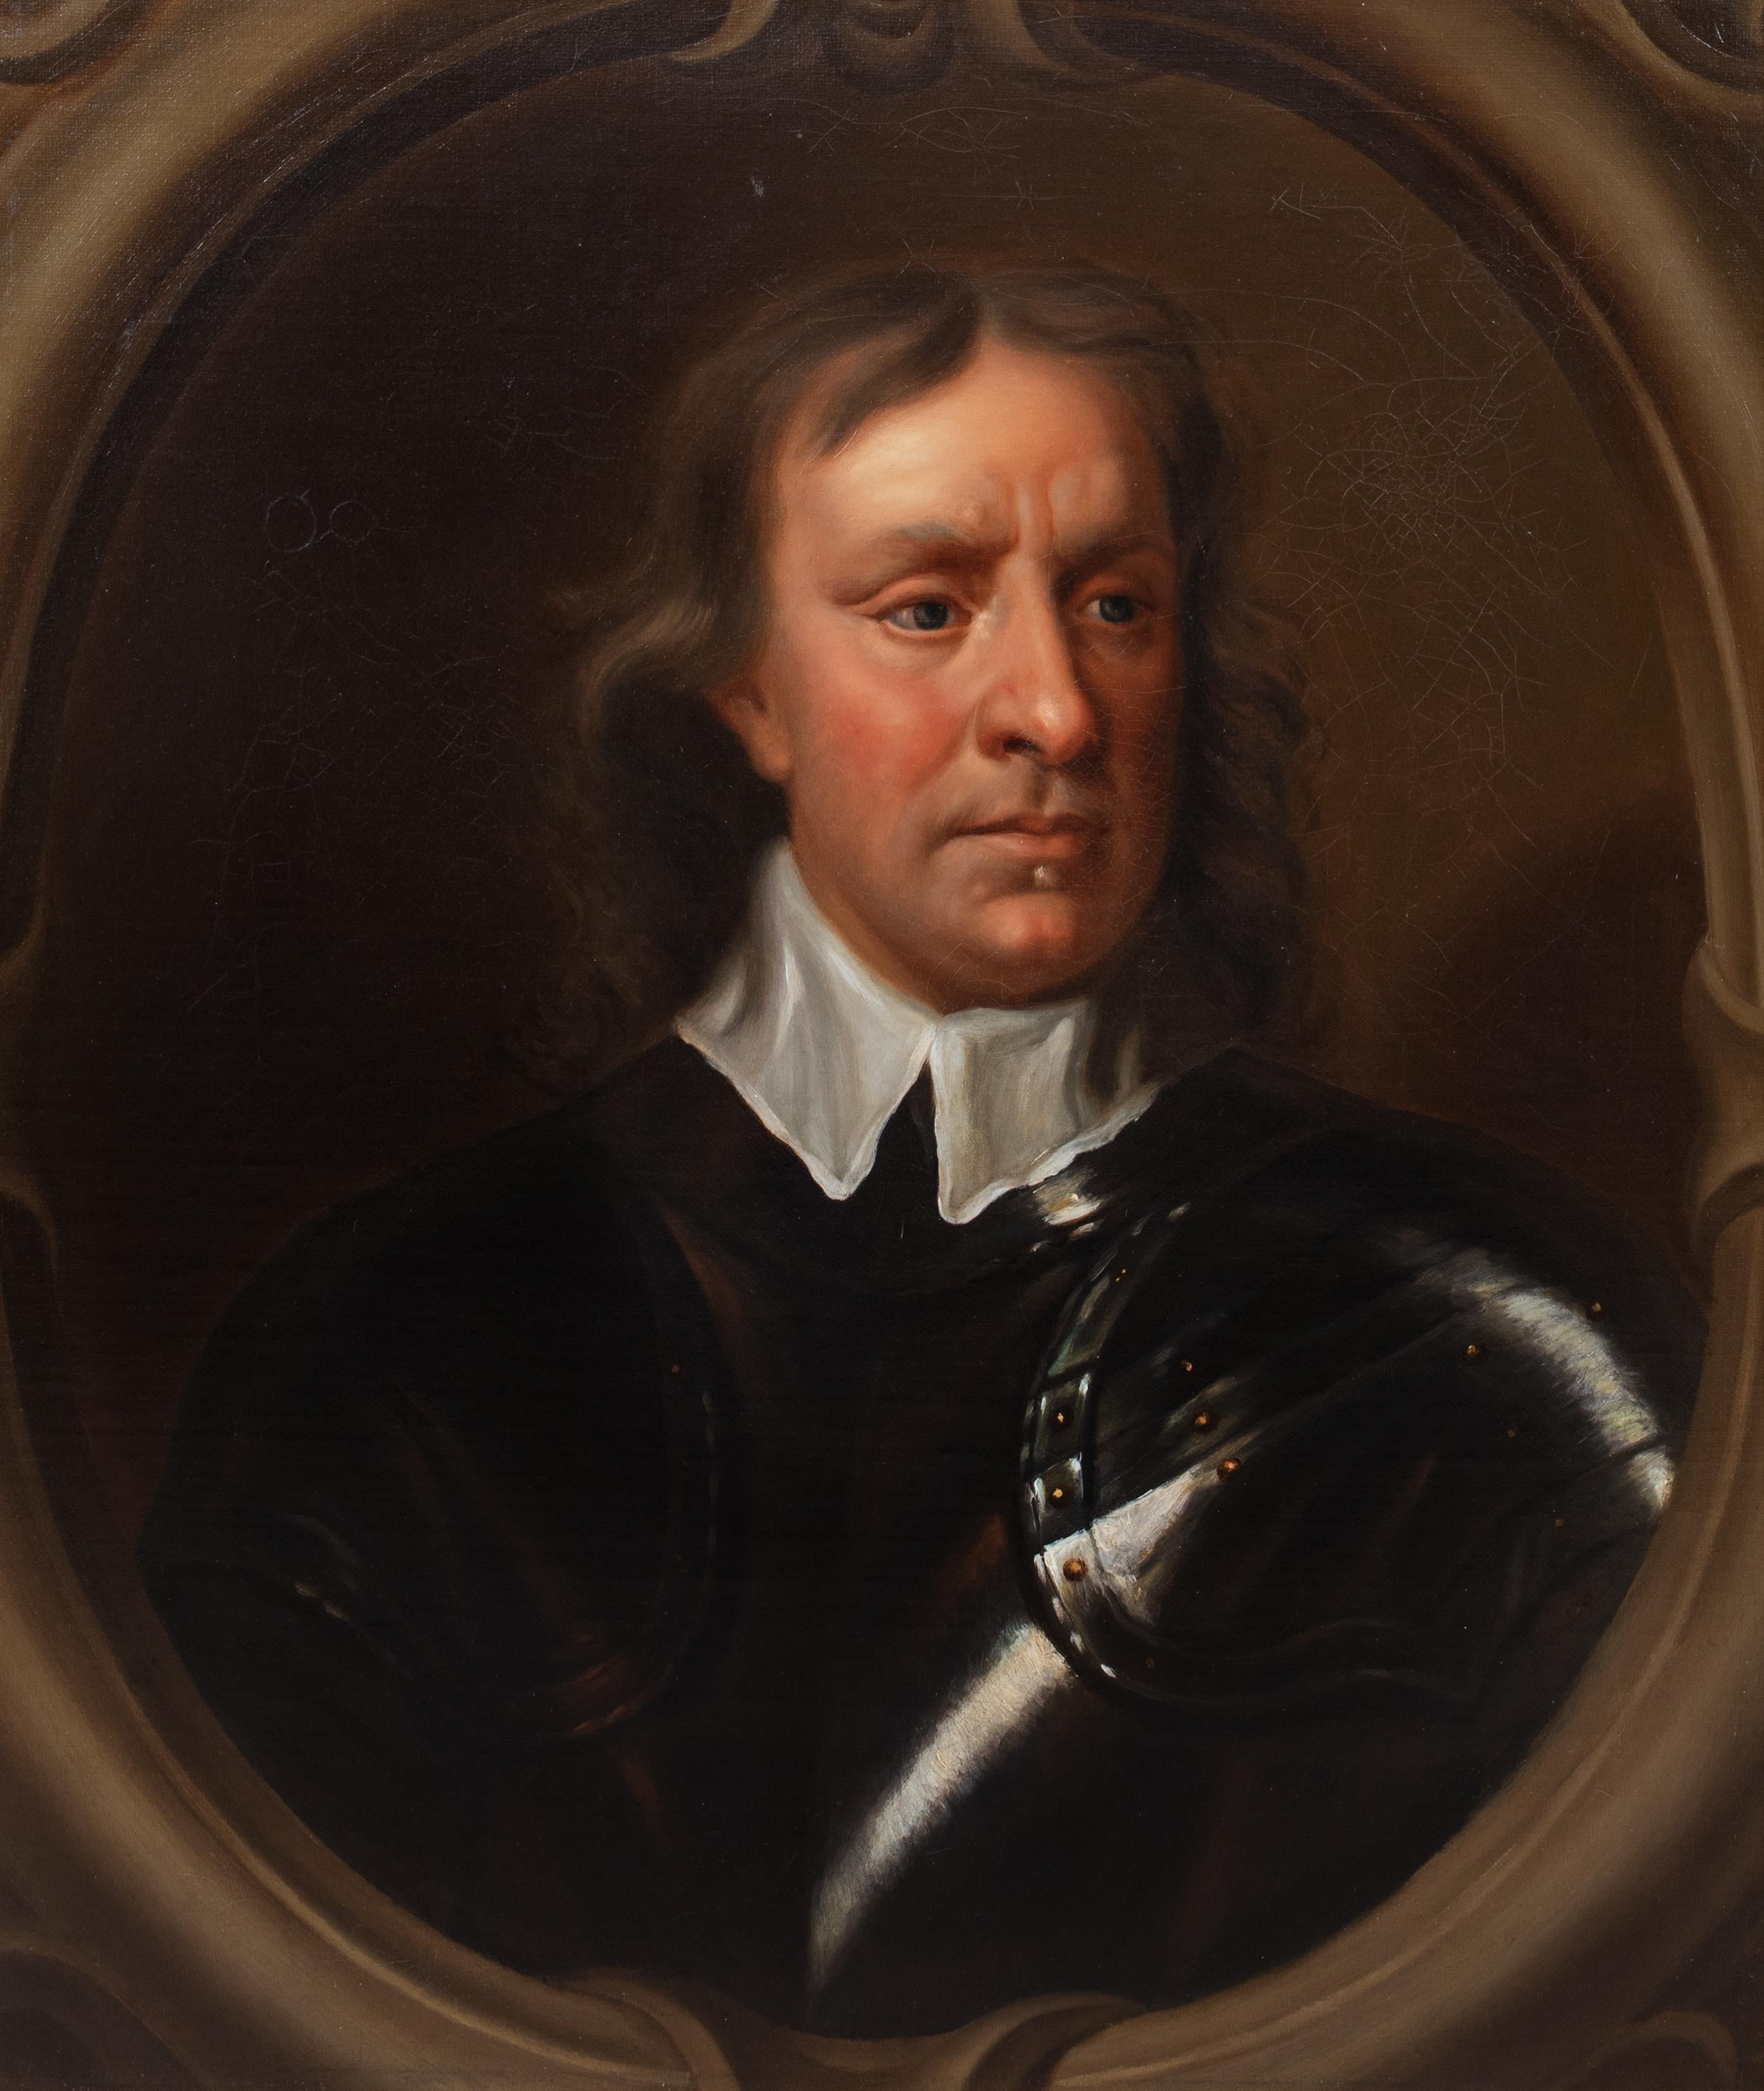 Porträt von Sir Oliver Cromwell (1599-1658) SIR PETER LELY

nach (1599-1658) SIR PETER LELY

Großes Porträt von Sir Oliver Cromwell in Rüstung aus dem 17. Jahrhundert, Öl auf Leinwand. Abgebildet in einem vorgetäuschten Oval in einer Rüstung als